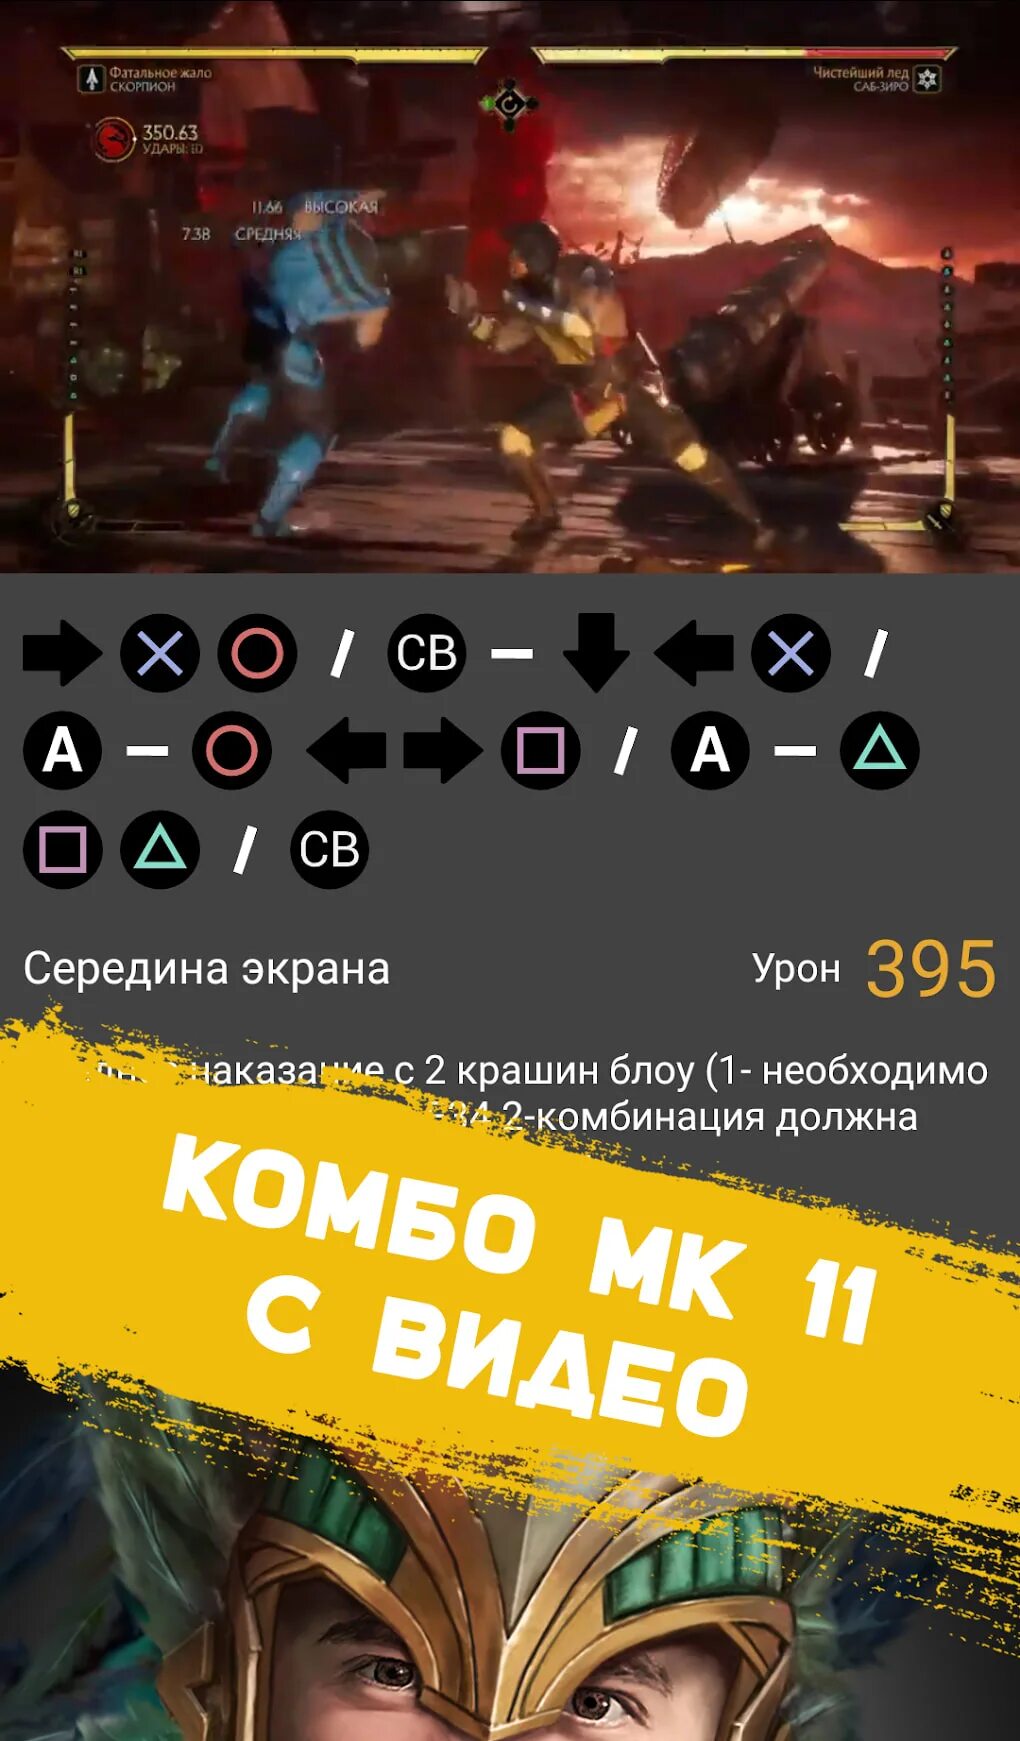 Комбо kombat. Mk11 Скорпион комбо Xbox. Комбо удары в мортал комбат 11 на ps4. Mortal Kombat 11 Scorpion Guide PLAYSTATION. Mortal Kombat ps4 комбинации.